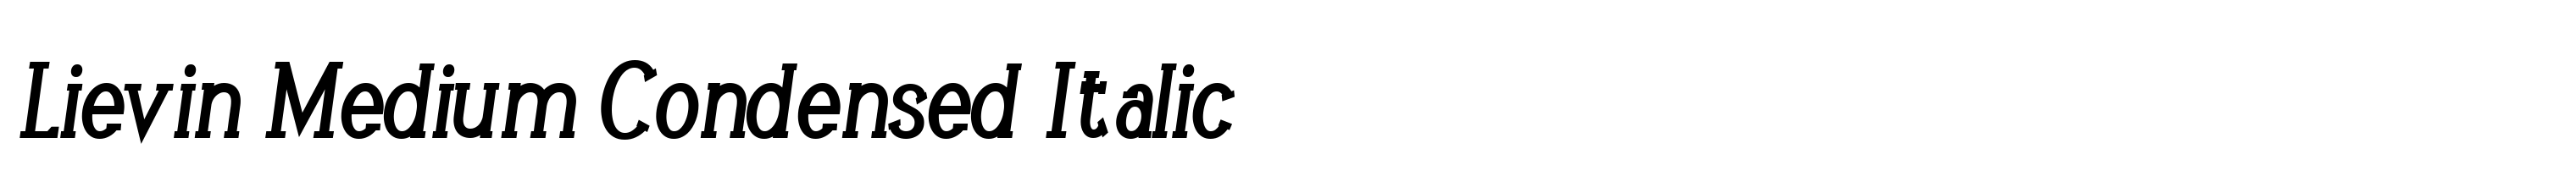 Lievin Medium Condensed Italic